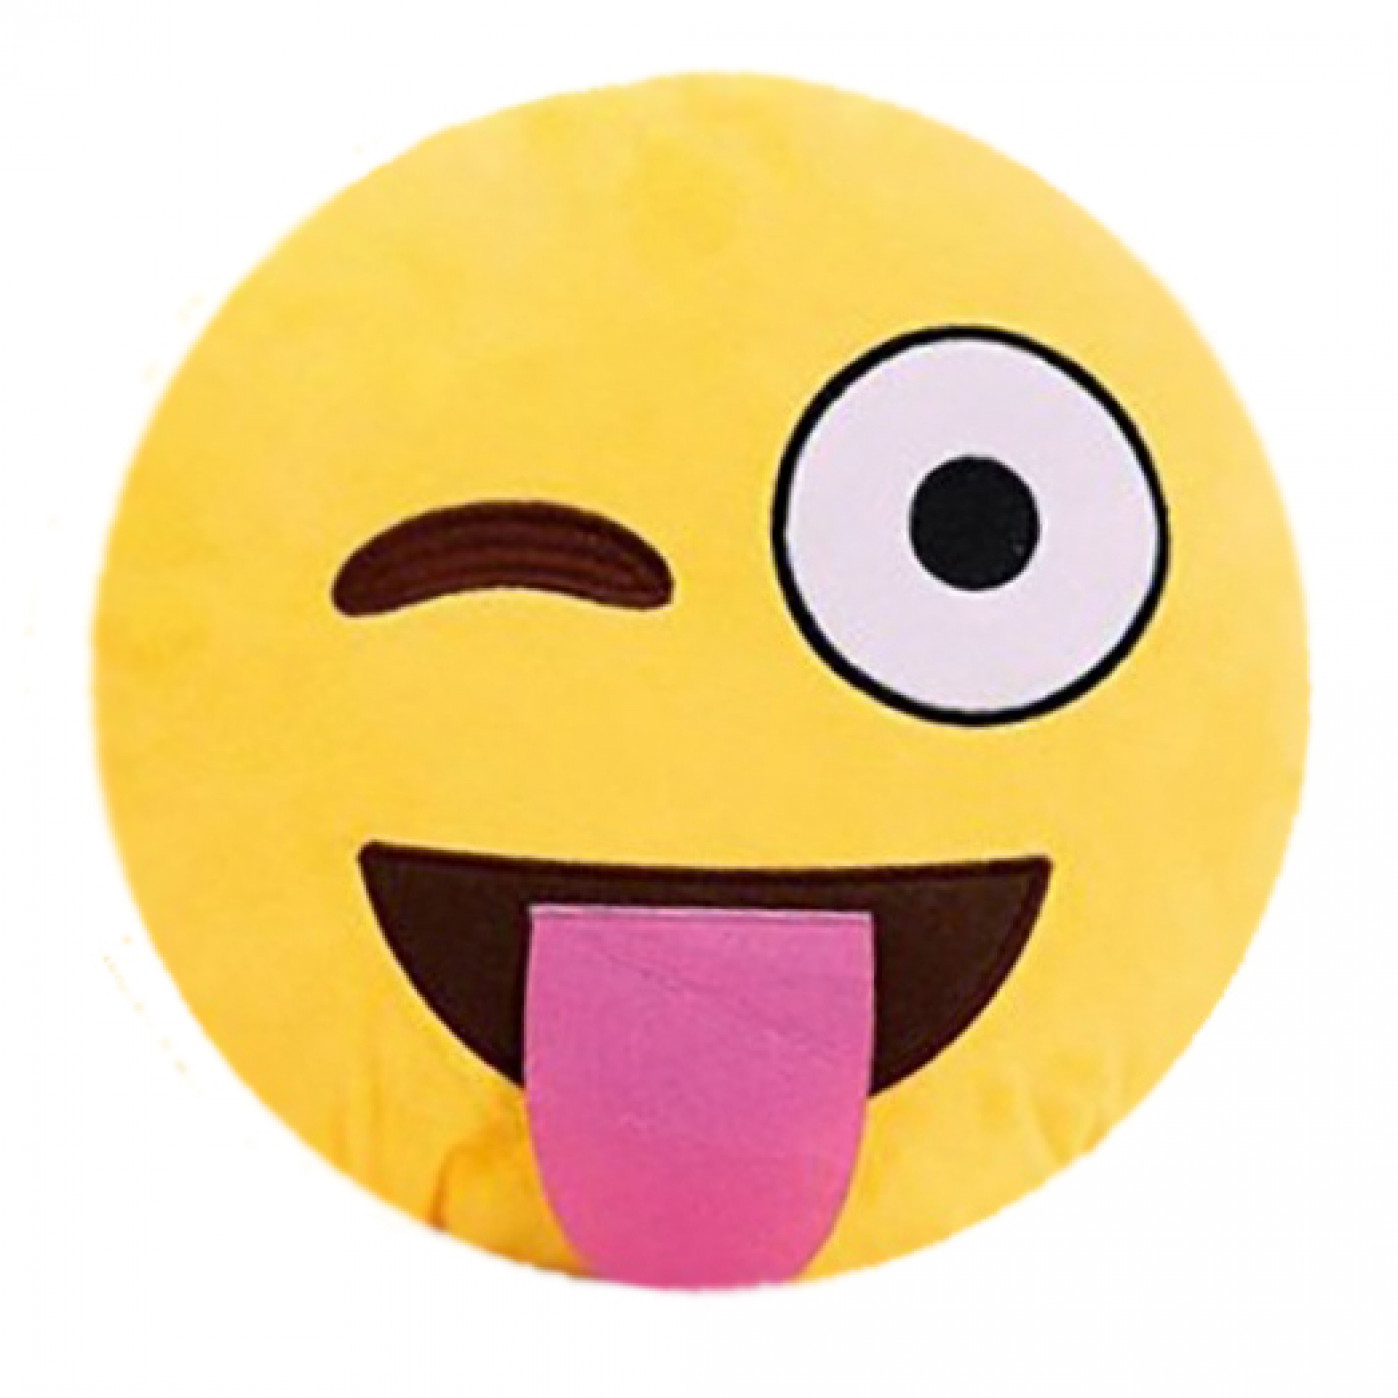 

Подушка emoji (эмоджи) в ассортименте, подмигивающий смайл с языком